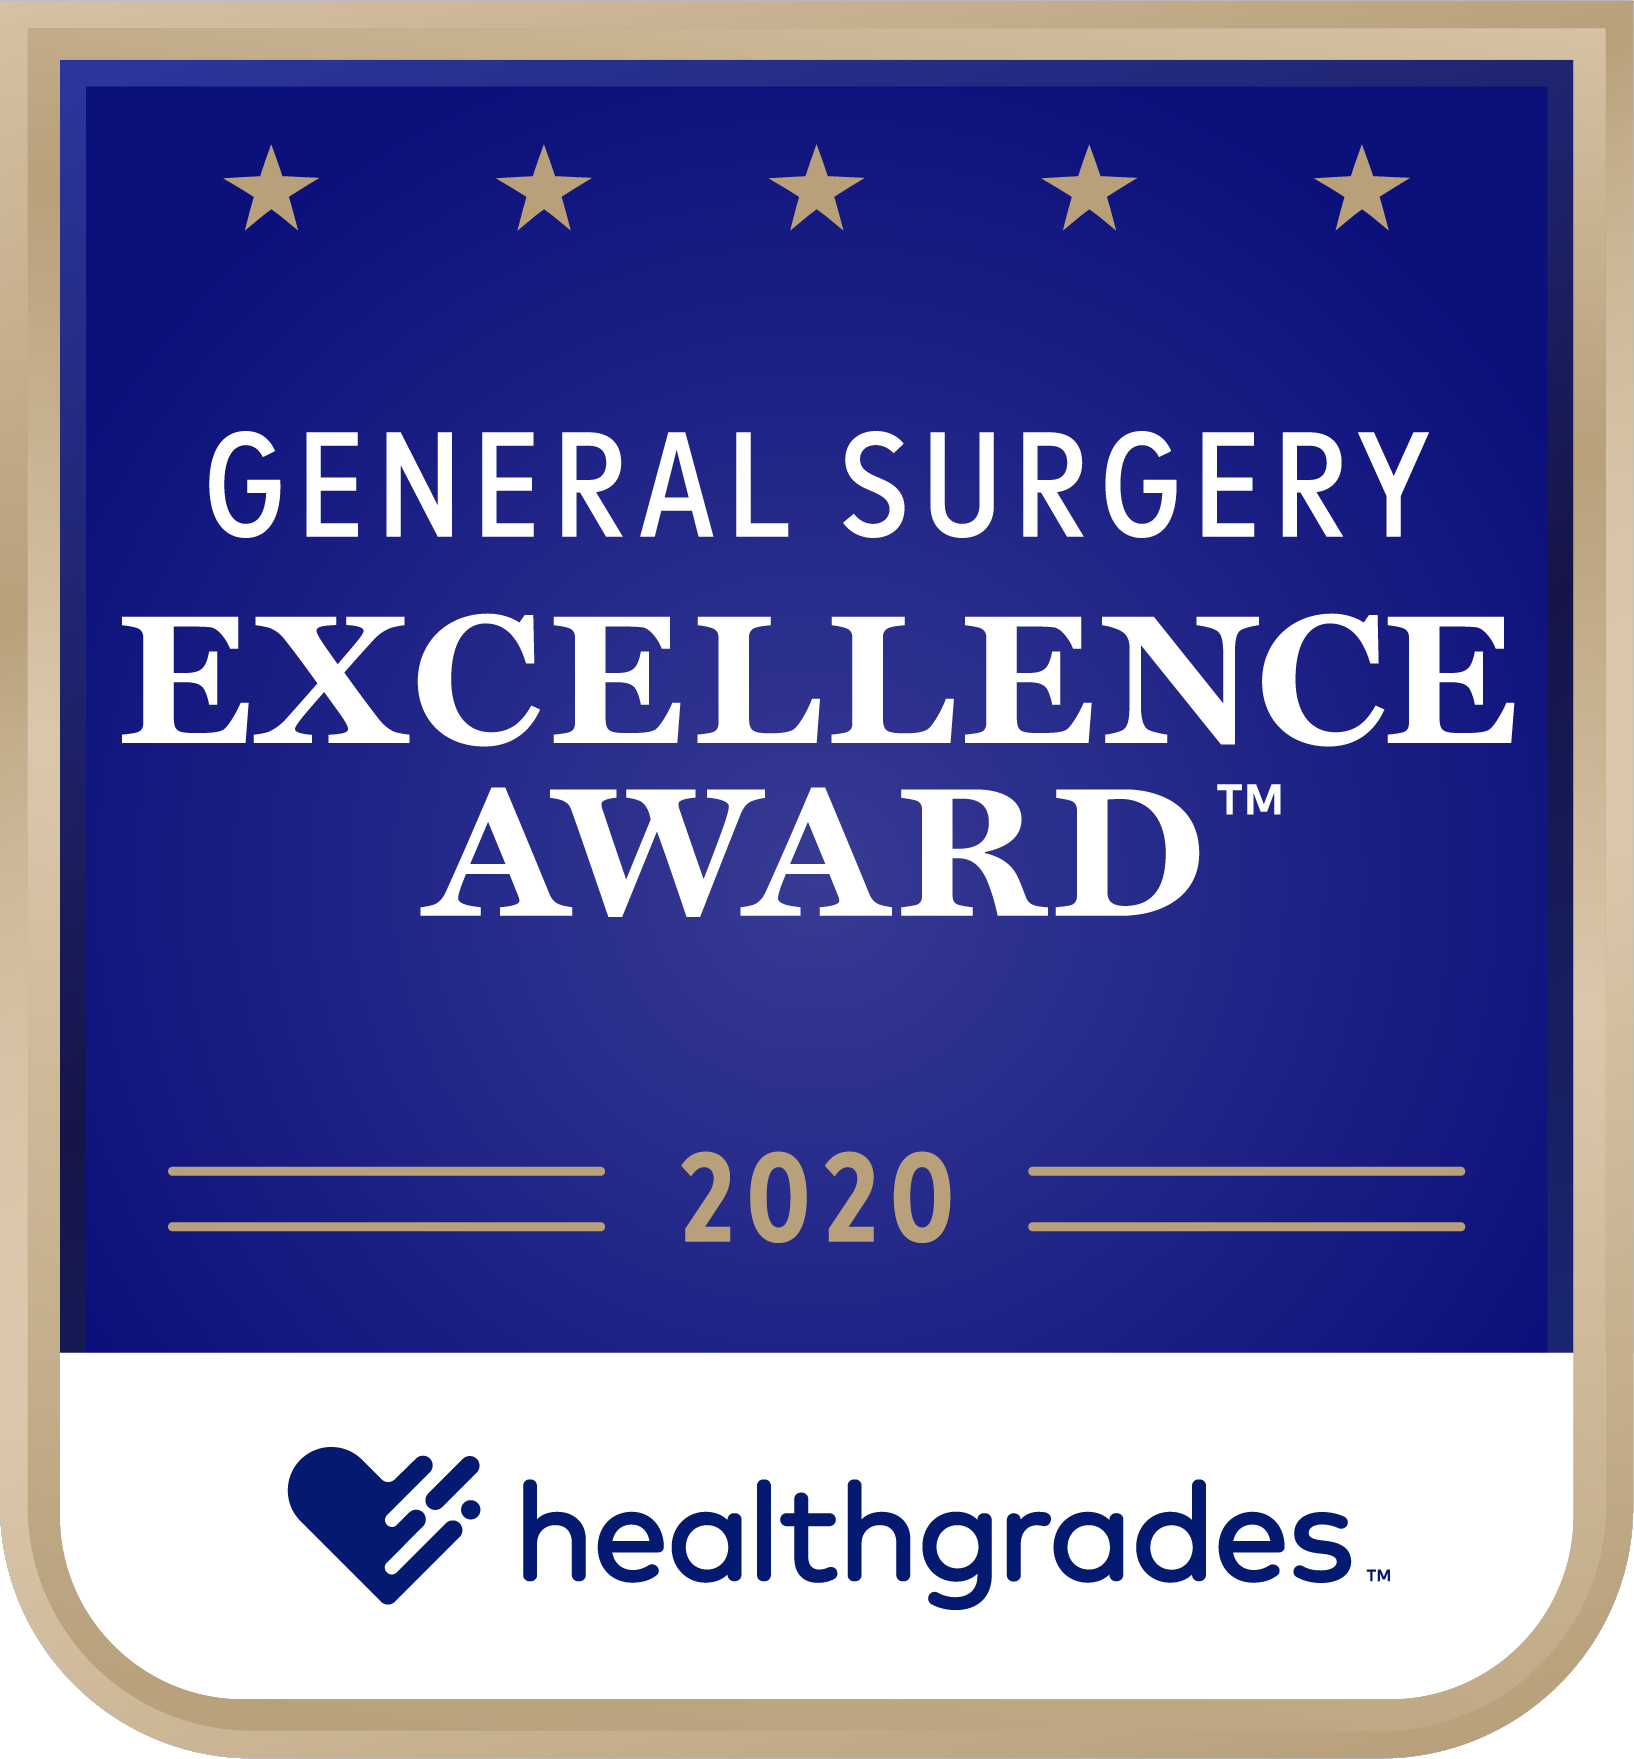 HG_General_Surgery_Award_Image_2020.png